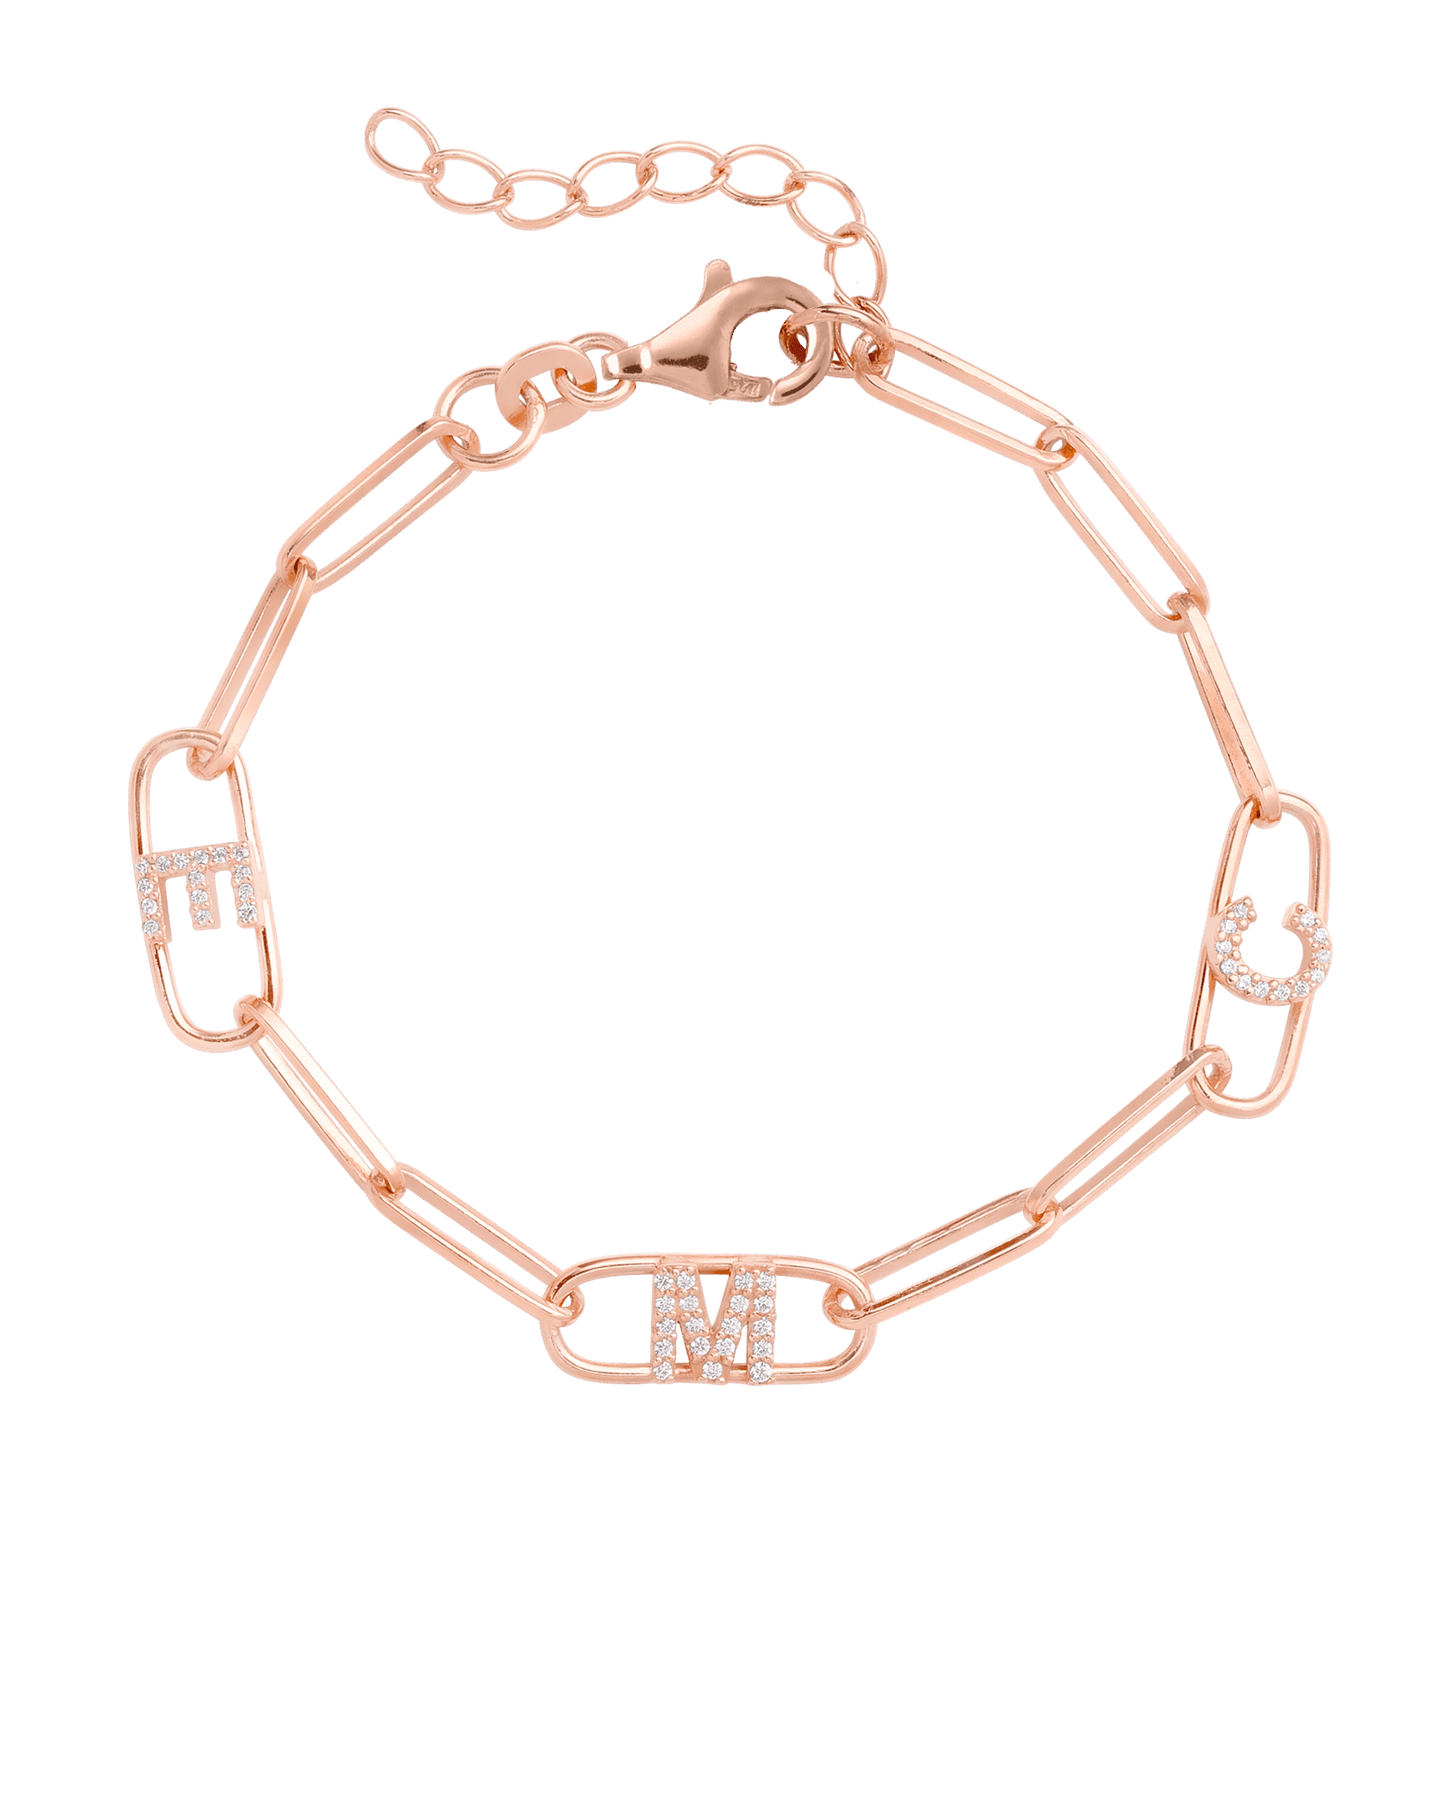 Initials Link Bracelet - 18K Gold Vermeil Bracelets magal-dev 